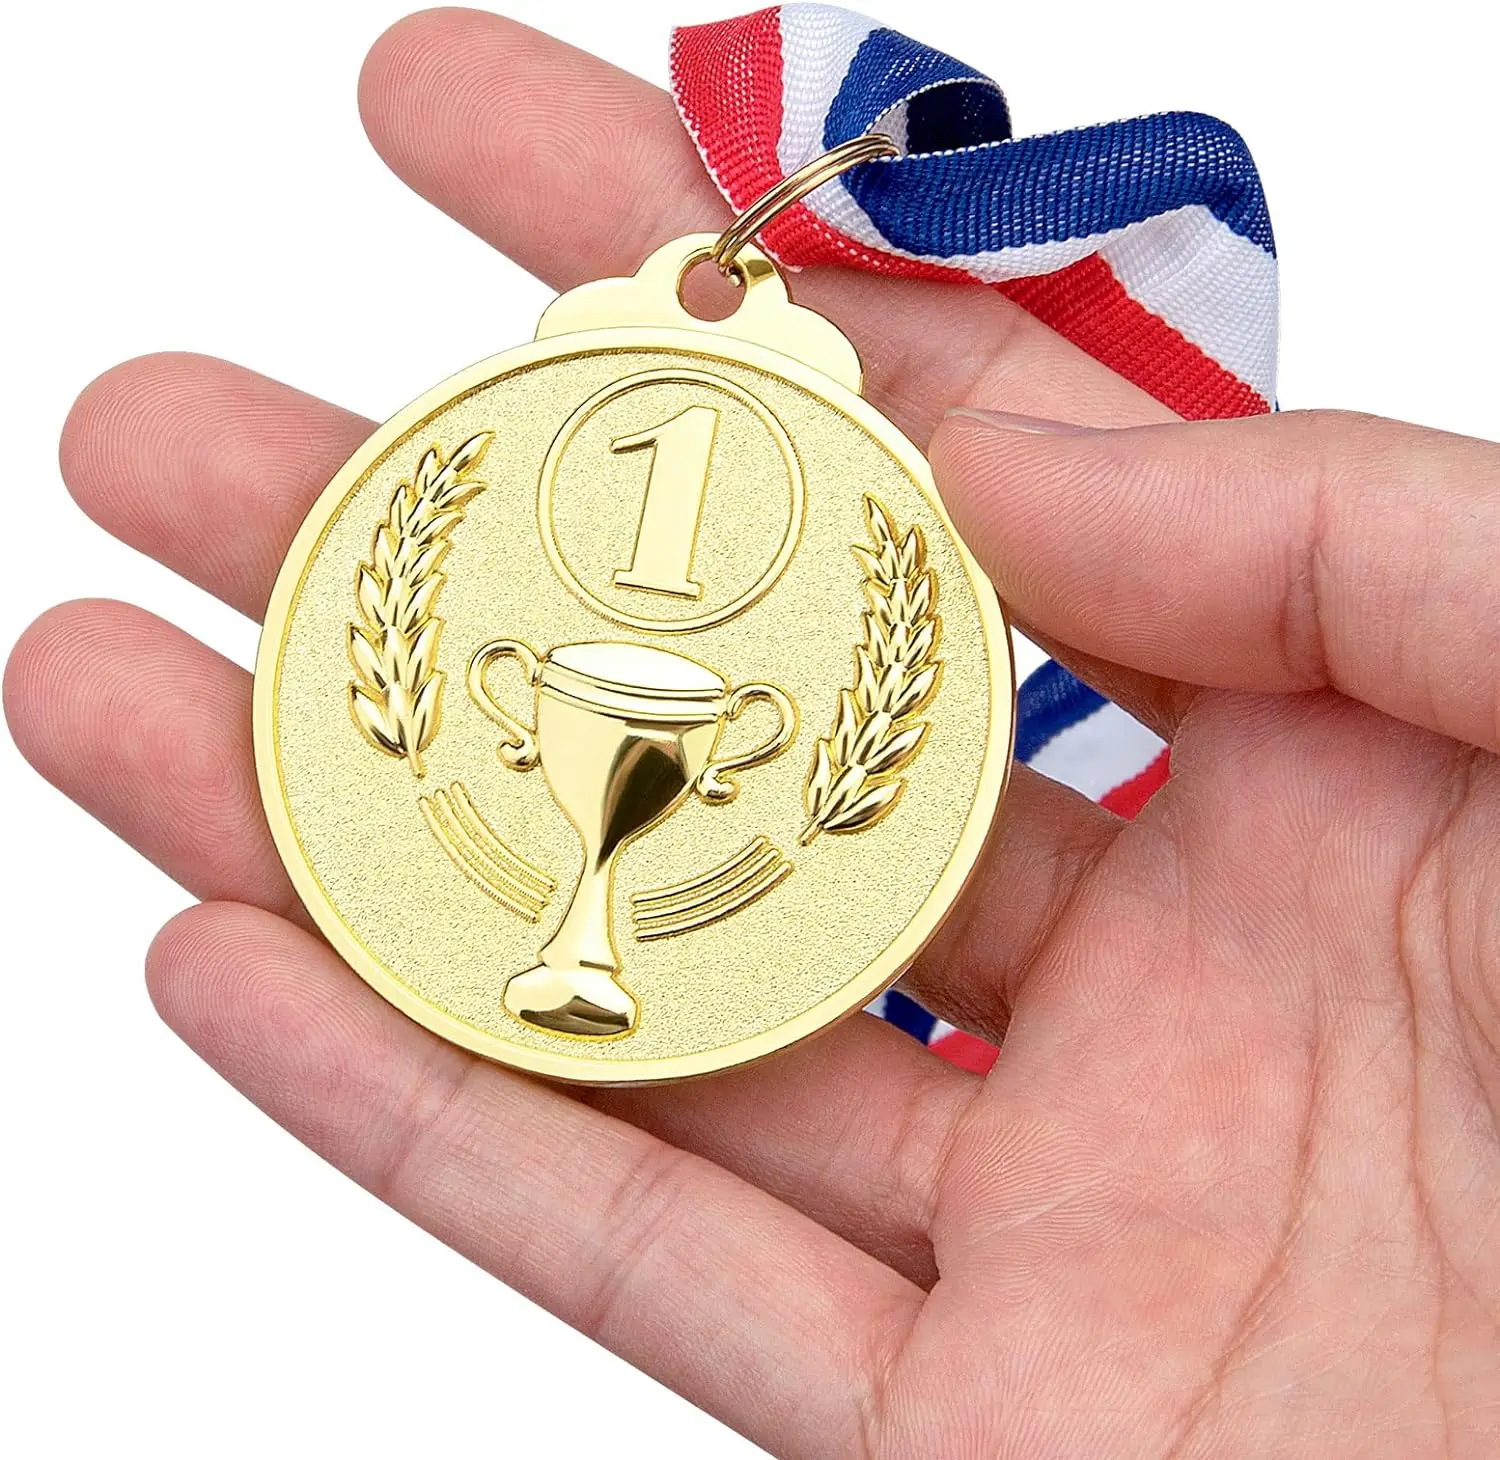 Vencedor Prémio Apresenta para Competição, Vencedor Prémio Escolar, Prata Dourada e Bronze, 1 ° e 2 °, Desporto, 5PCs